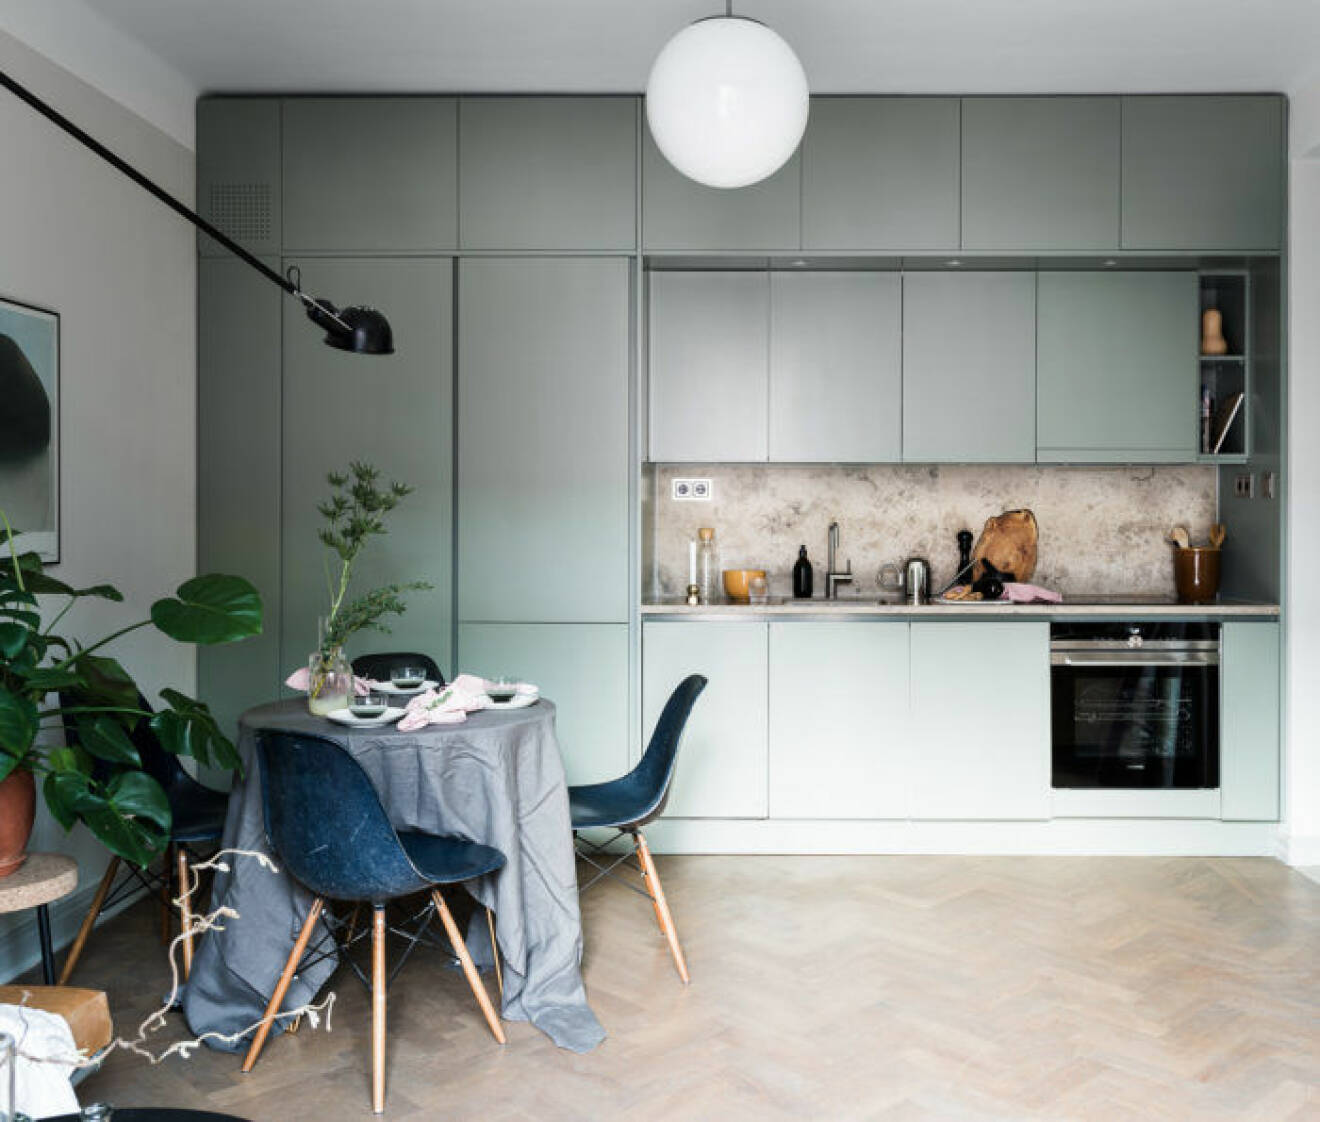 Snyggt platsbyggt kök i pistagegrönt